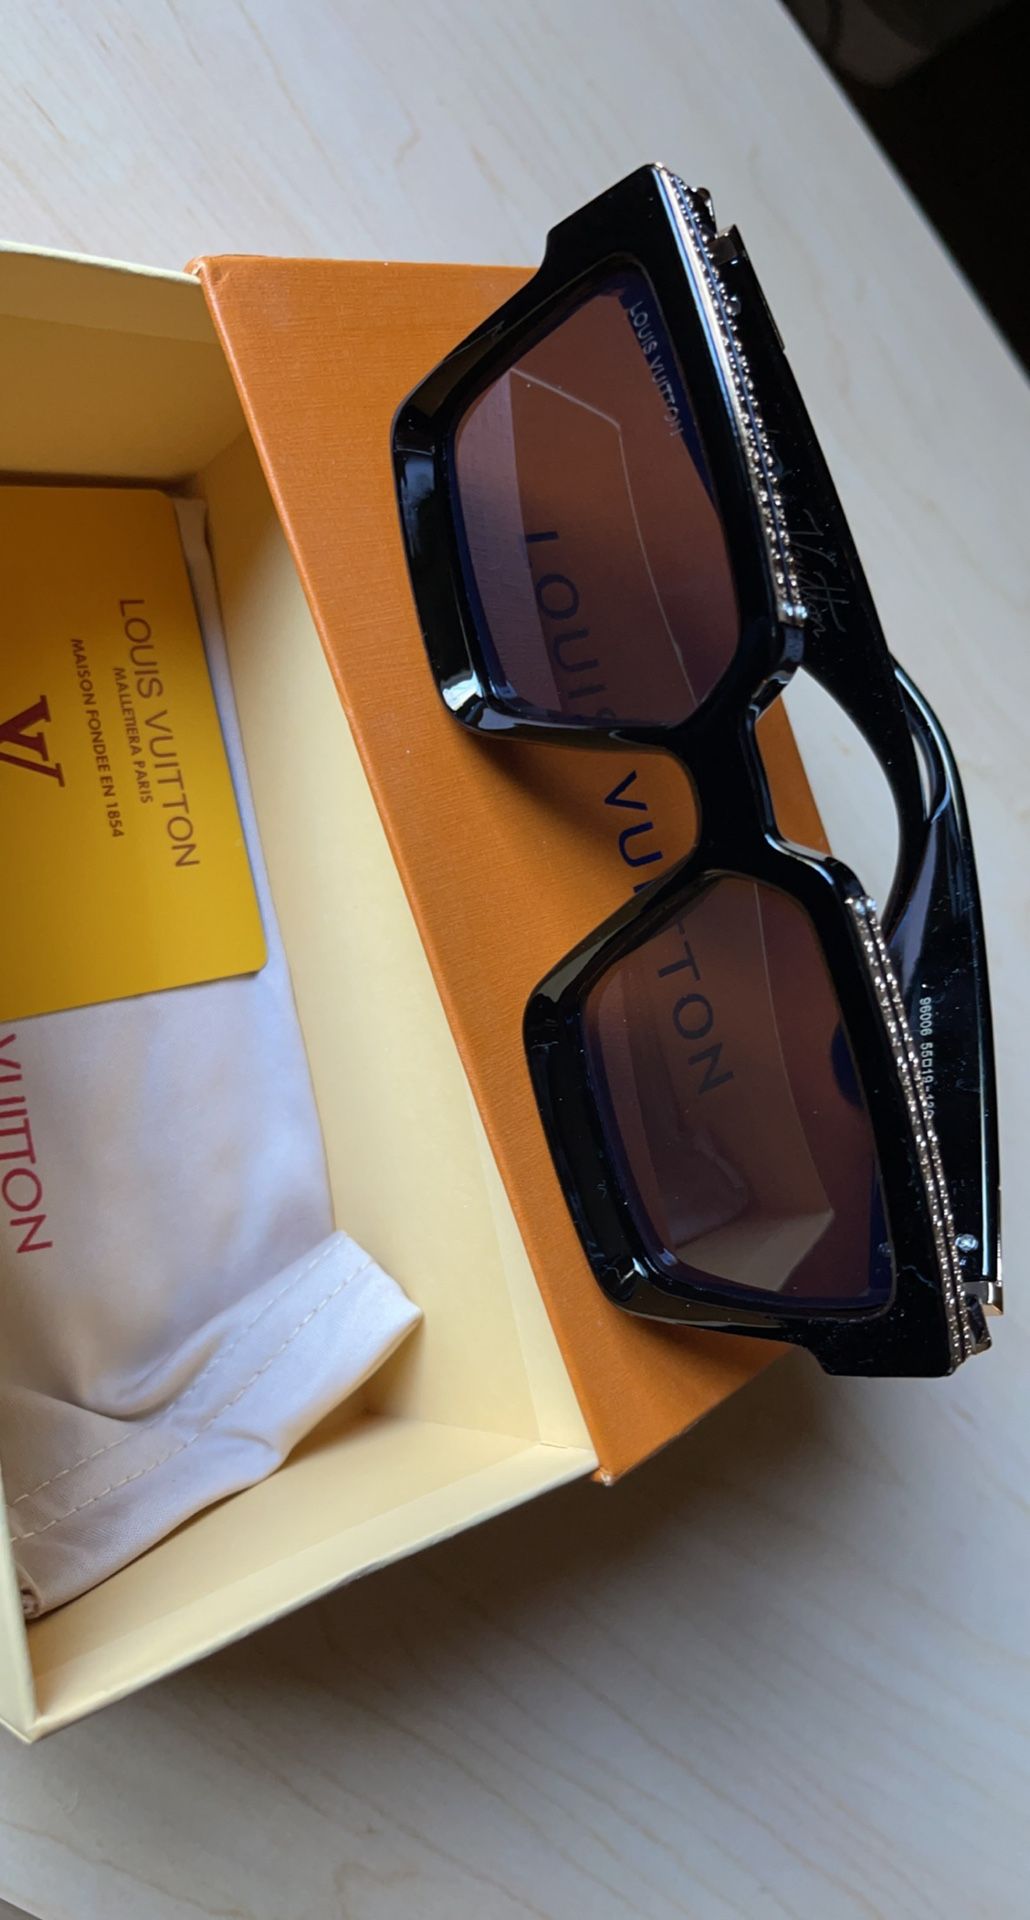 Louis Vuitton 2184 Gray 49/15 Eyeglass Frame for Sale in Orlando